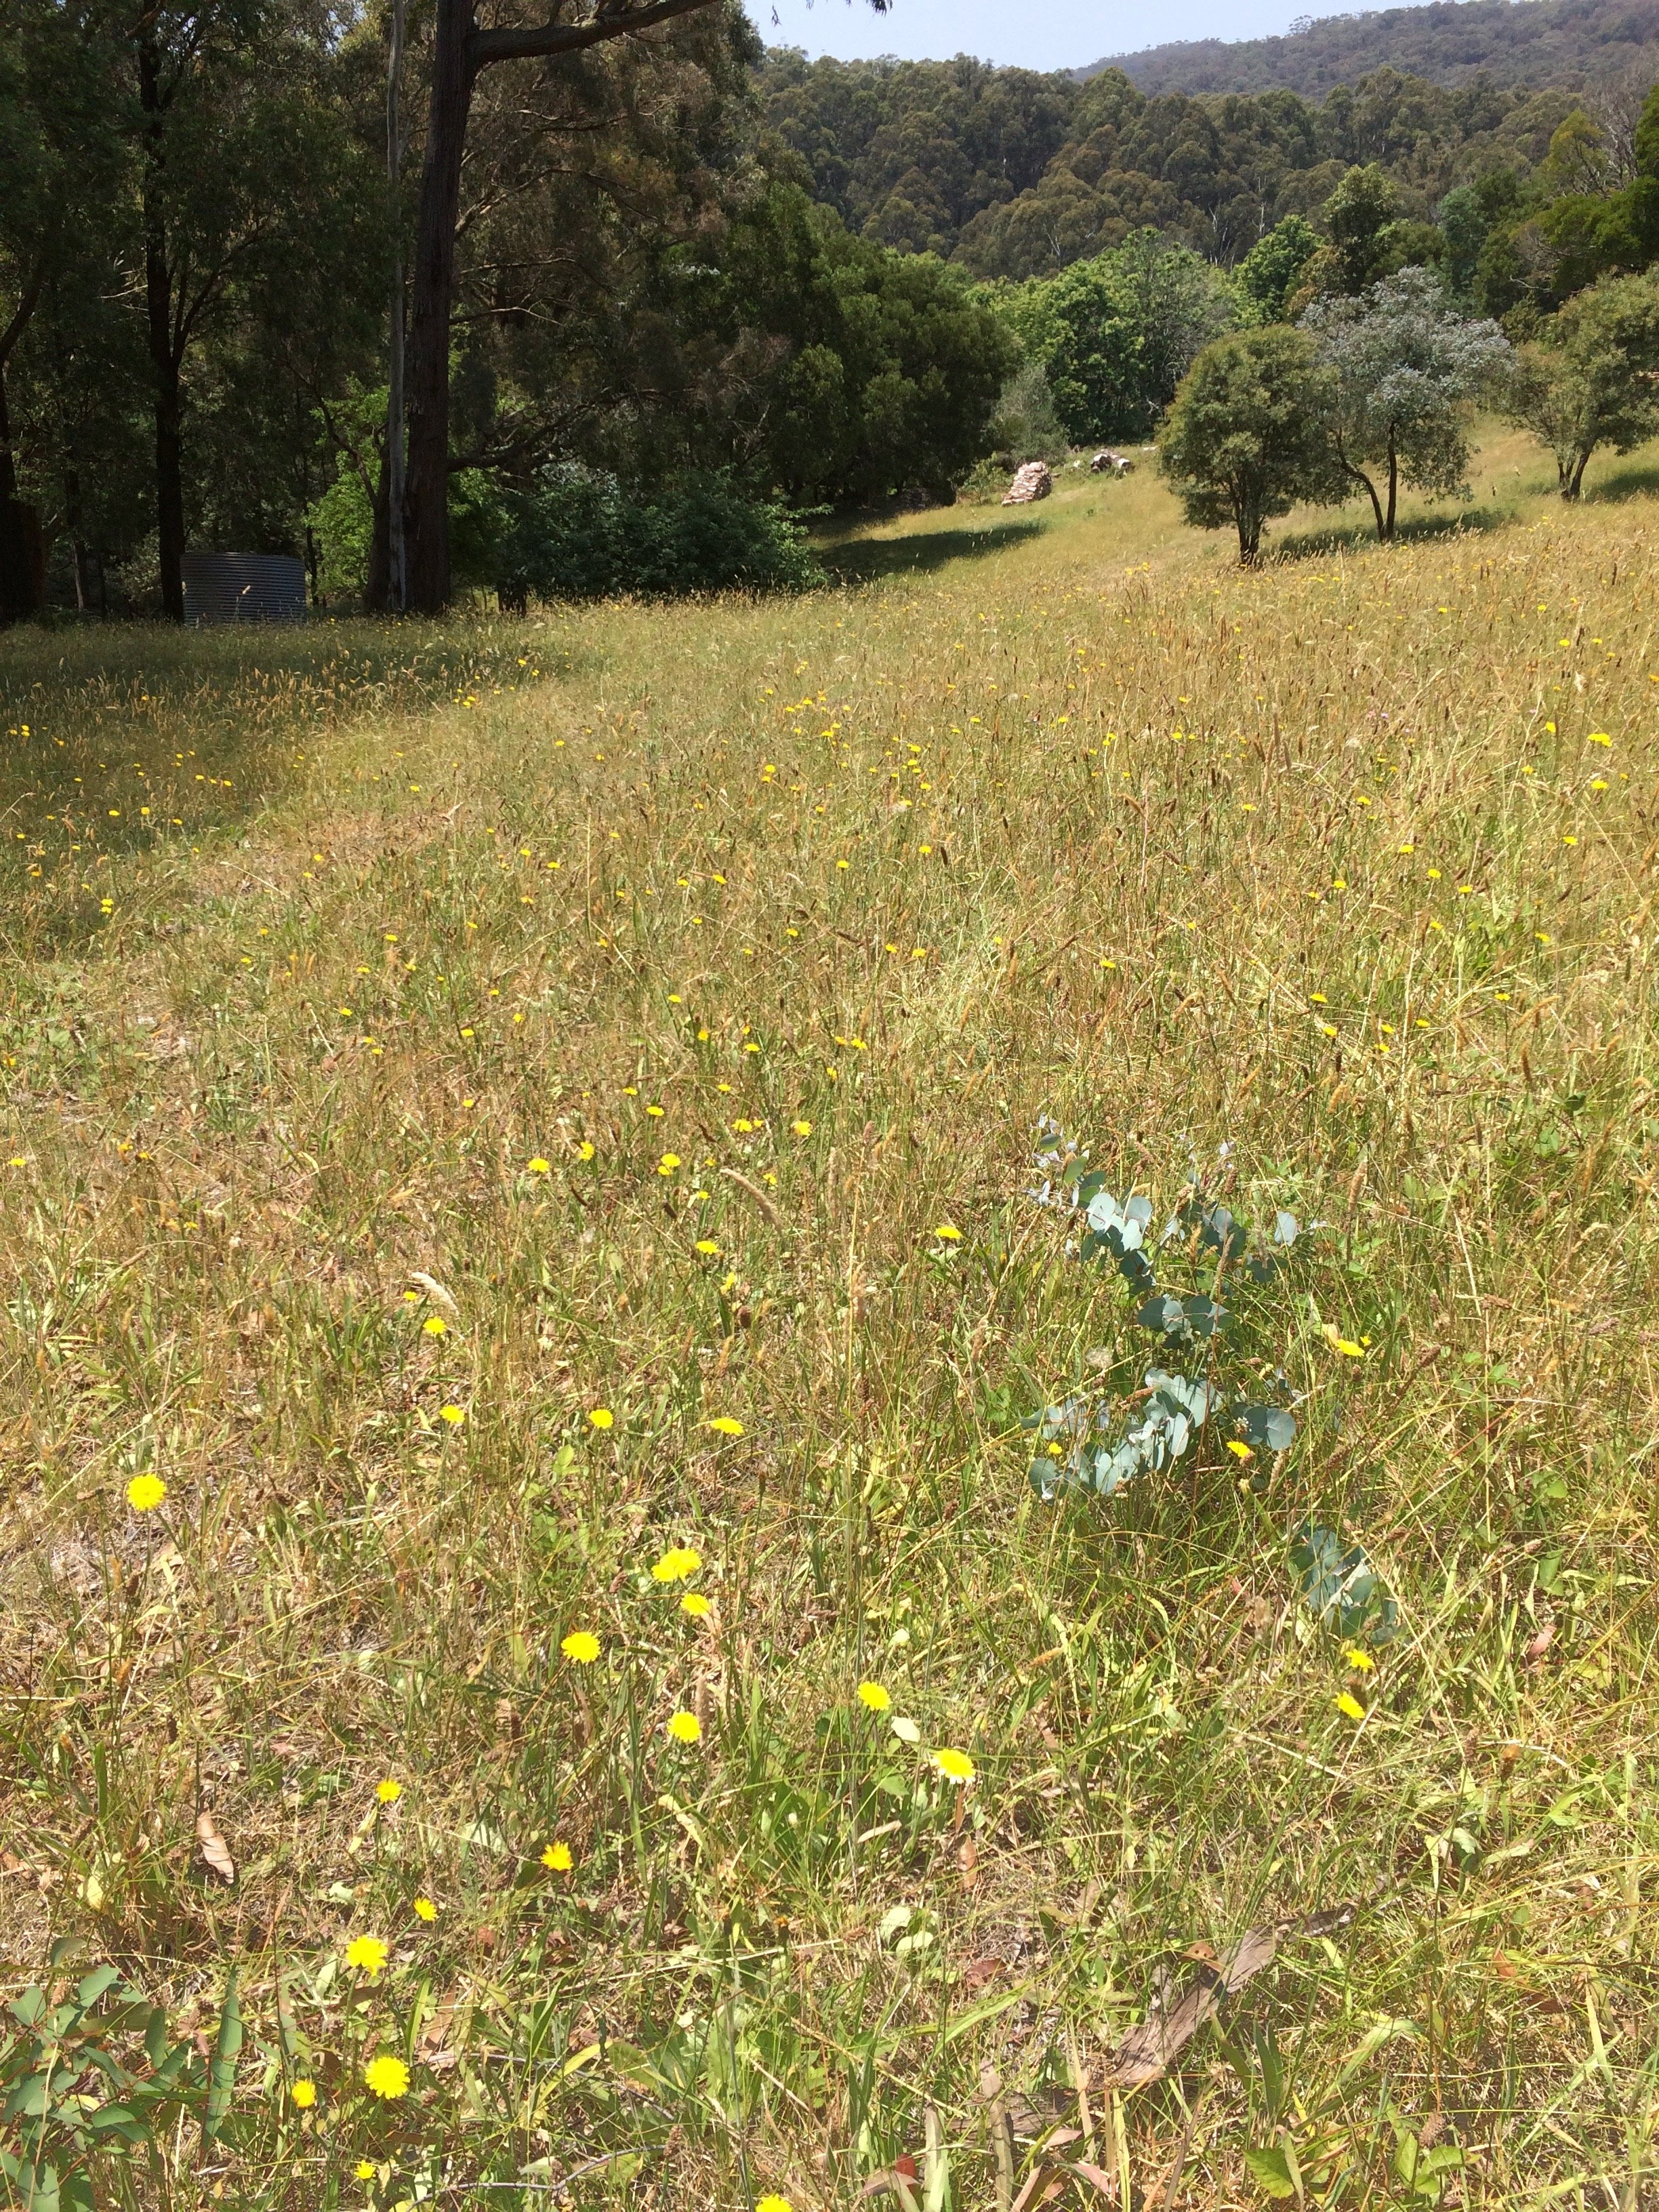 Summer solstice grassy field